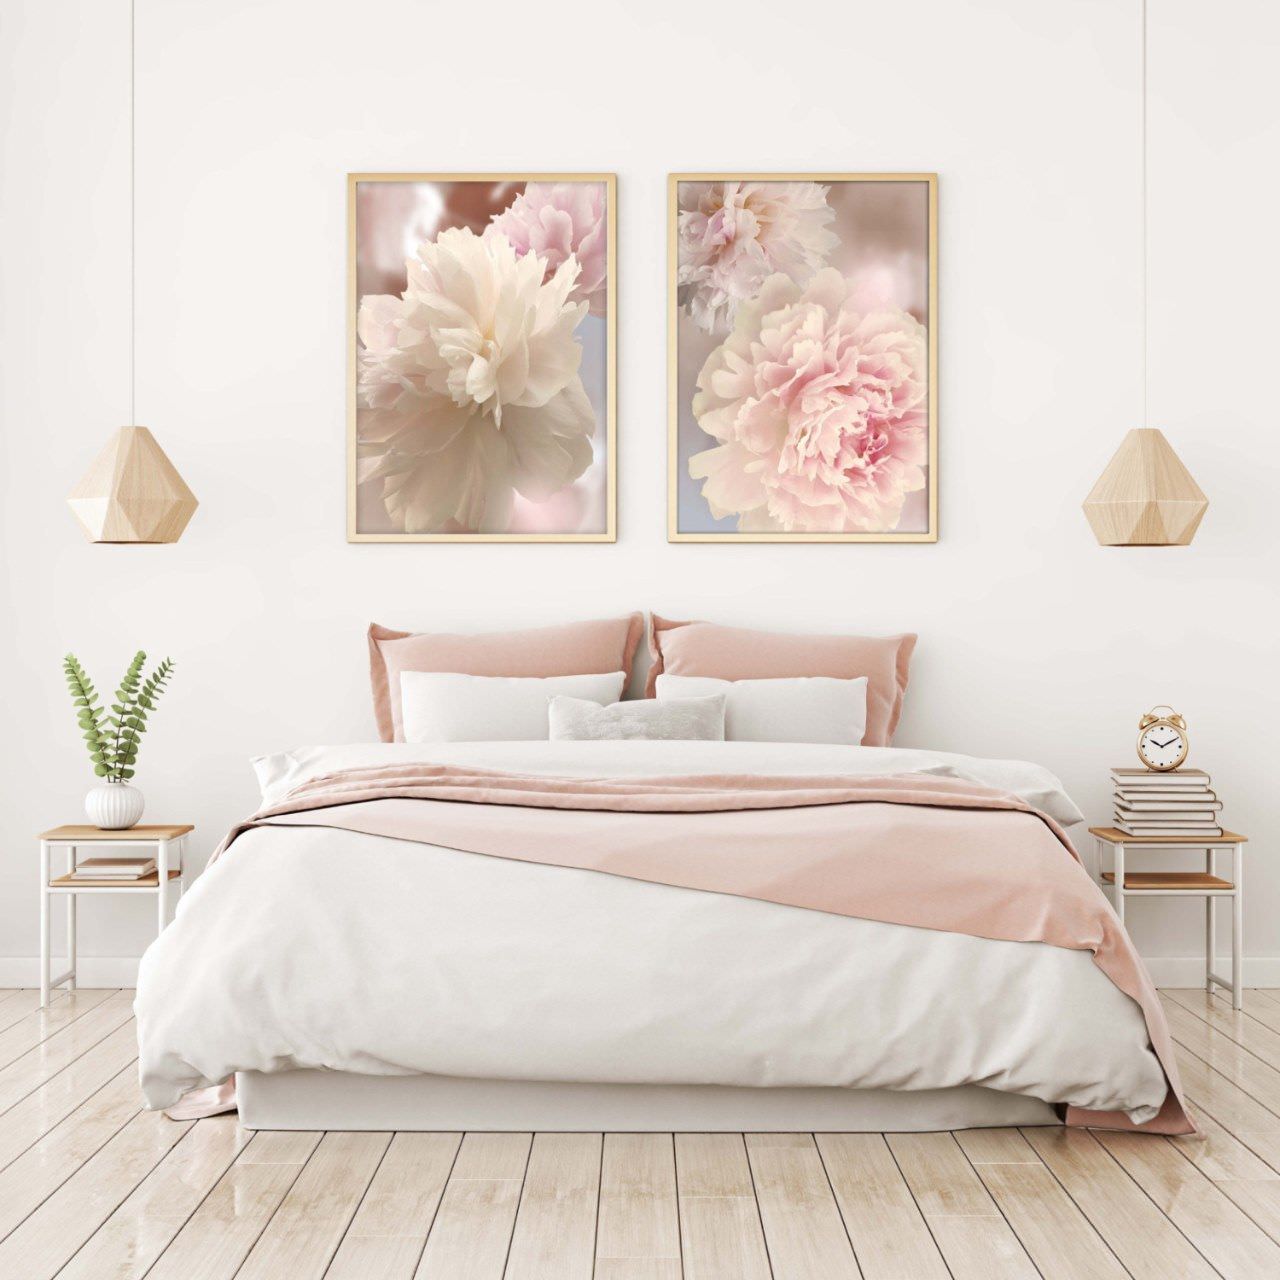 Ấn tượng với cách trang trí tranh hoa mẫu đơn thanh nhã, vô cùng phù hợp với phòng ngủ màu trắng phối hồng của bạn gái